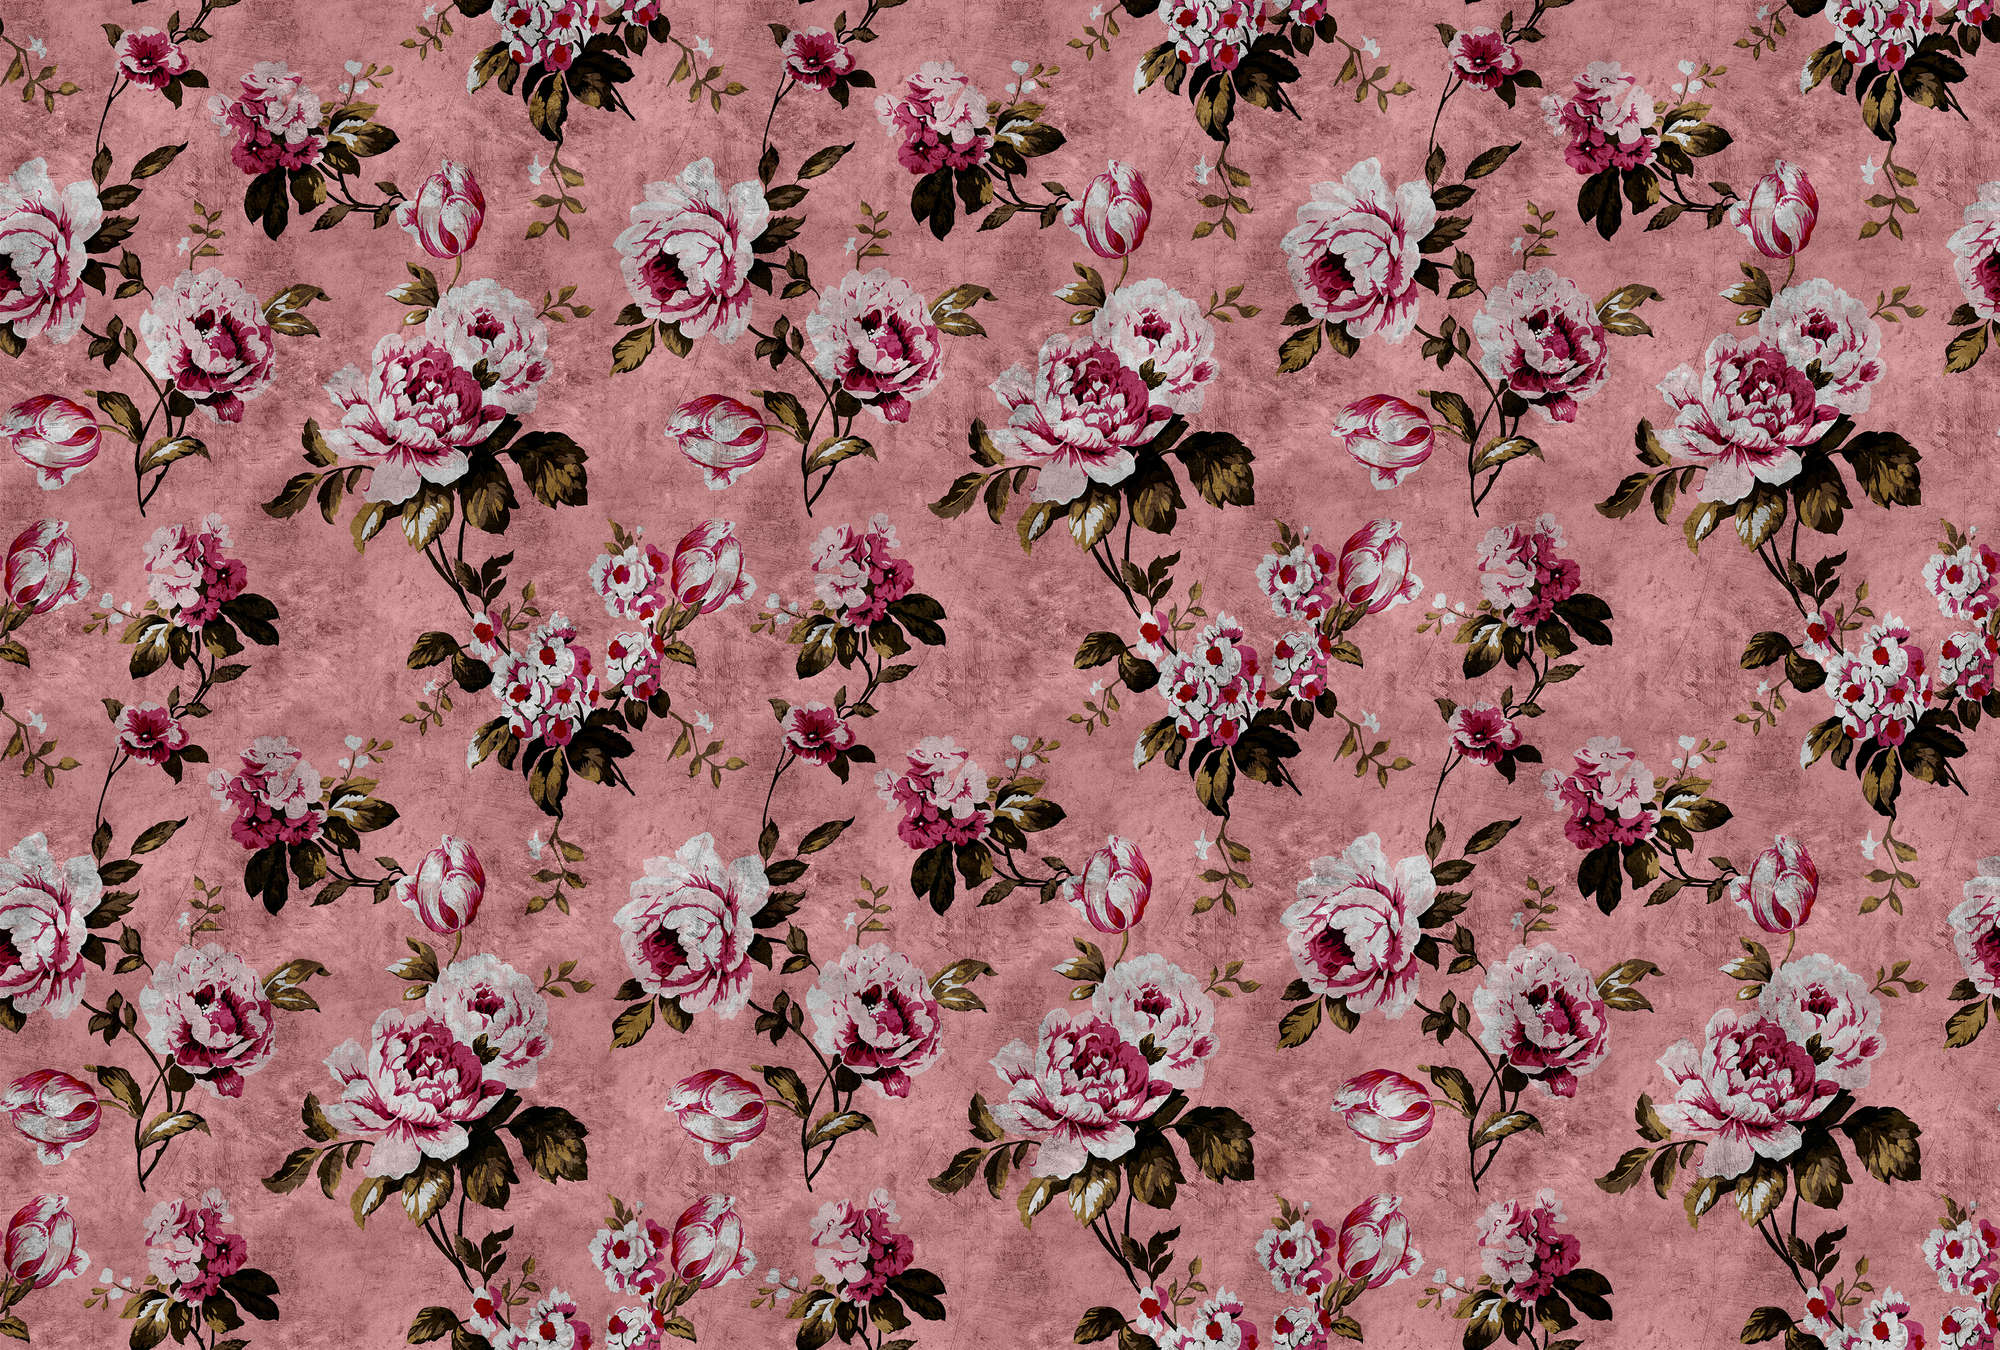             Wild roses 4 - Papier peint rose rétro à texture rayée - rose, rouge | Intissé lisse mat
        